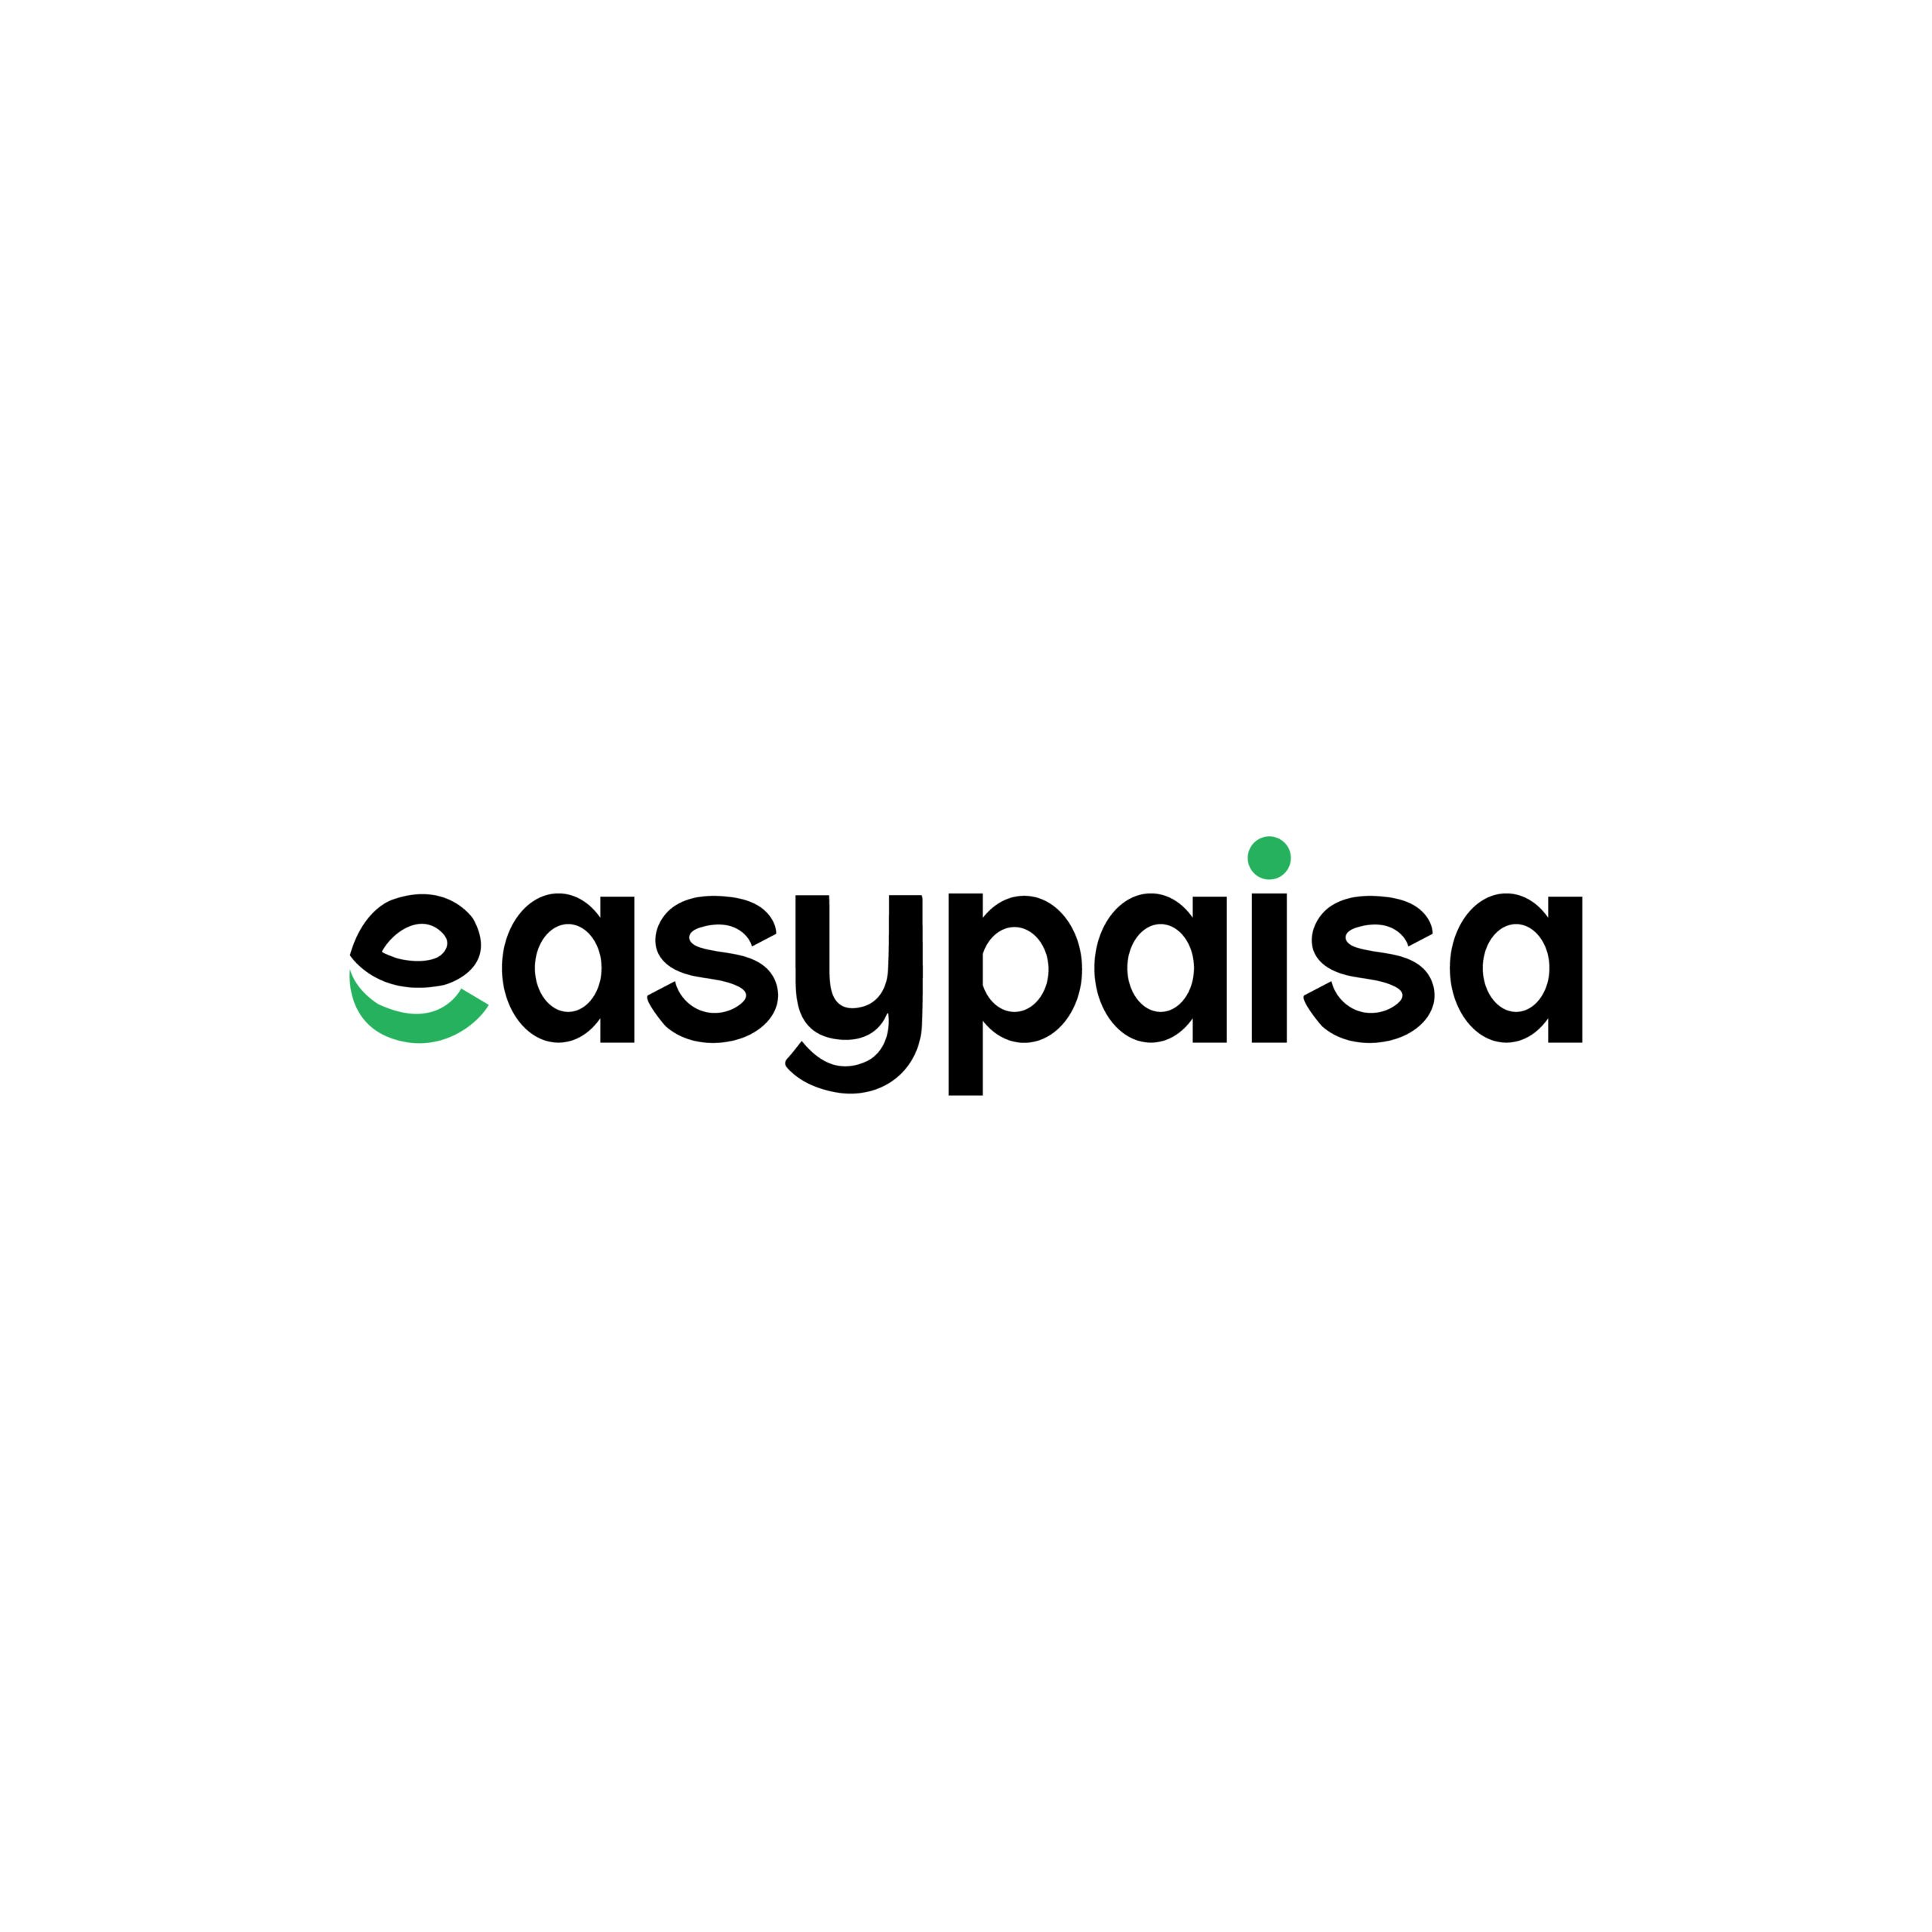 Easypaisa app logo vector